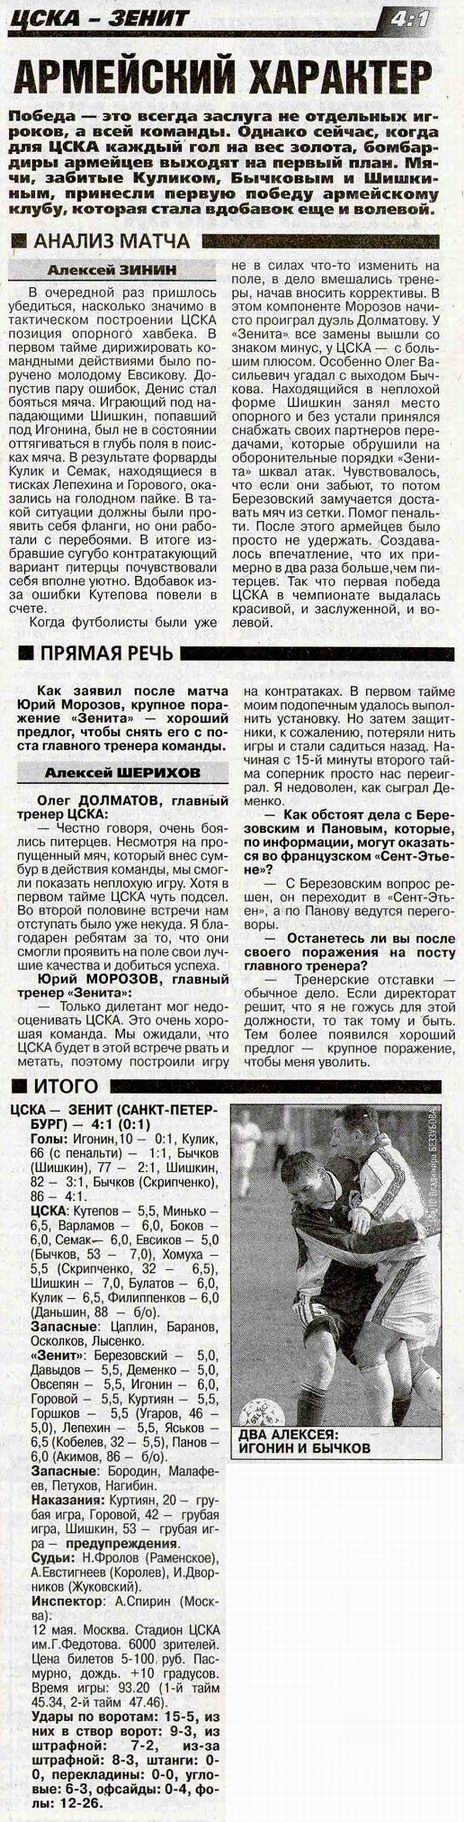 2000-05-12.CSKA-Zenit.2